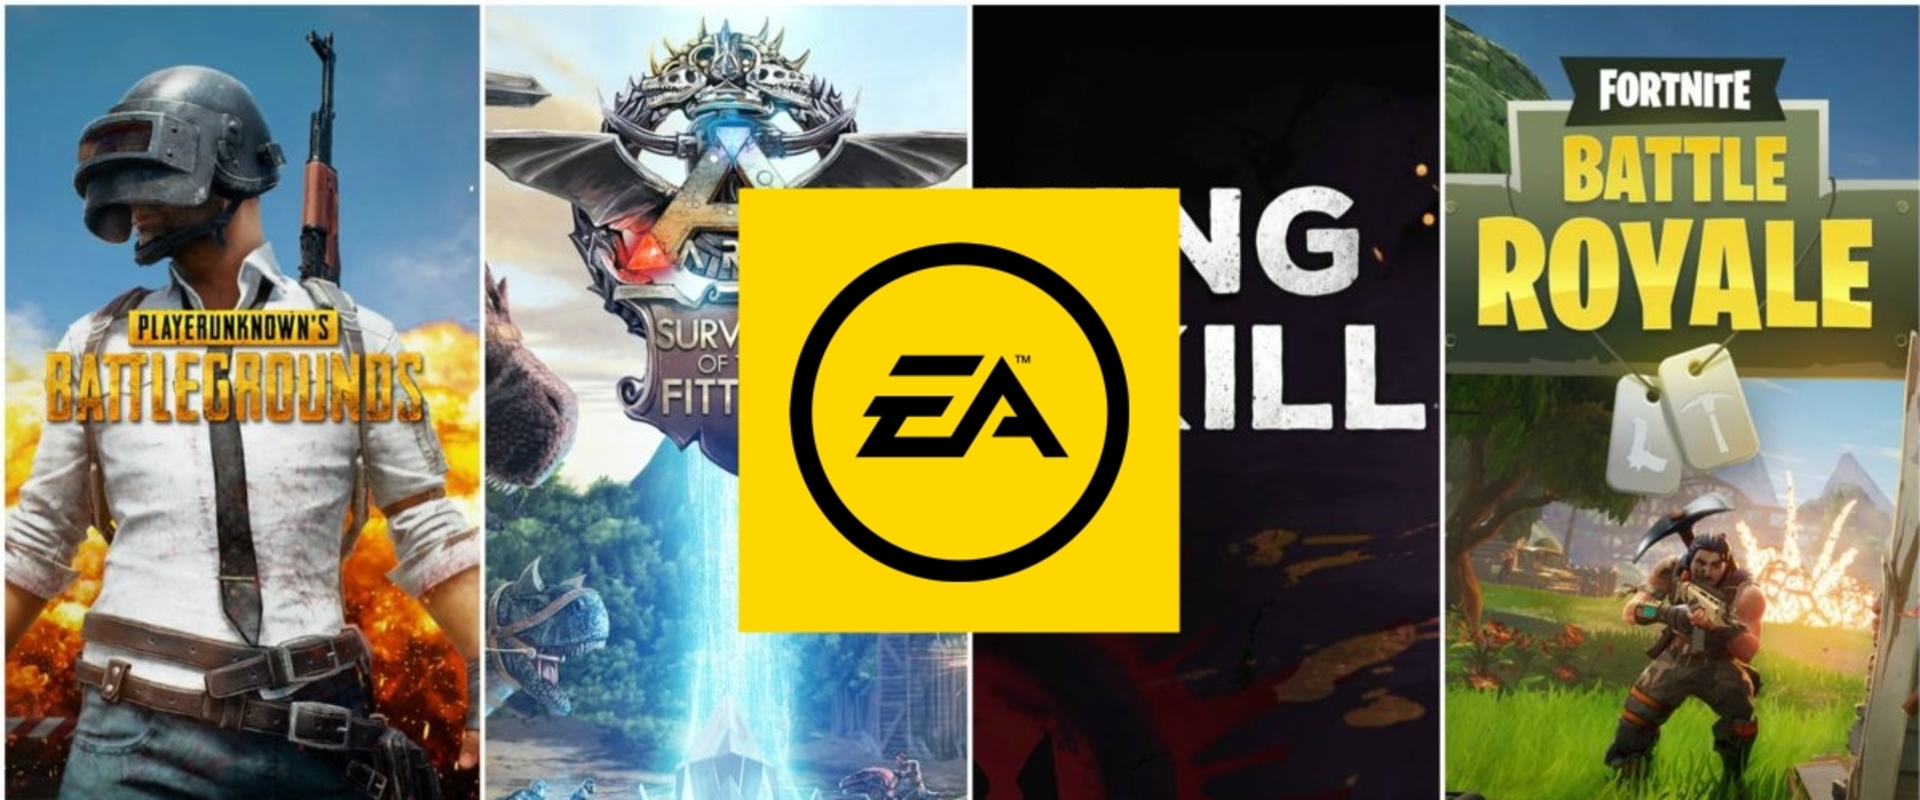 Ingyenes battle royale játékot tervez az EA?